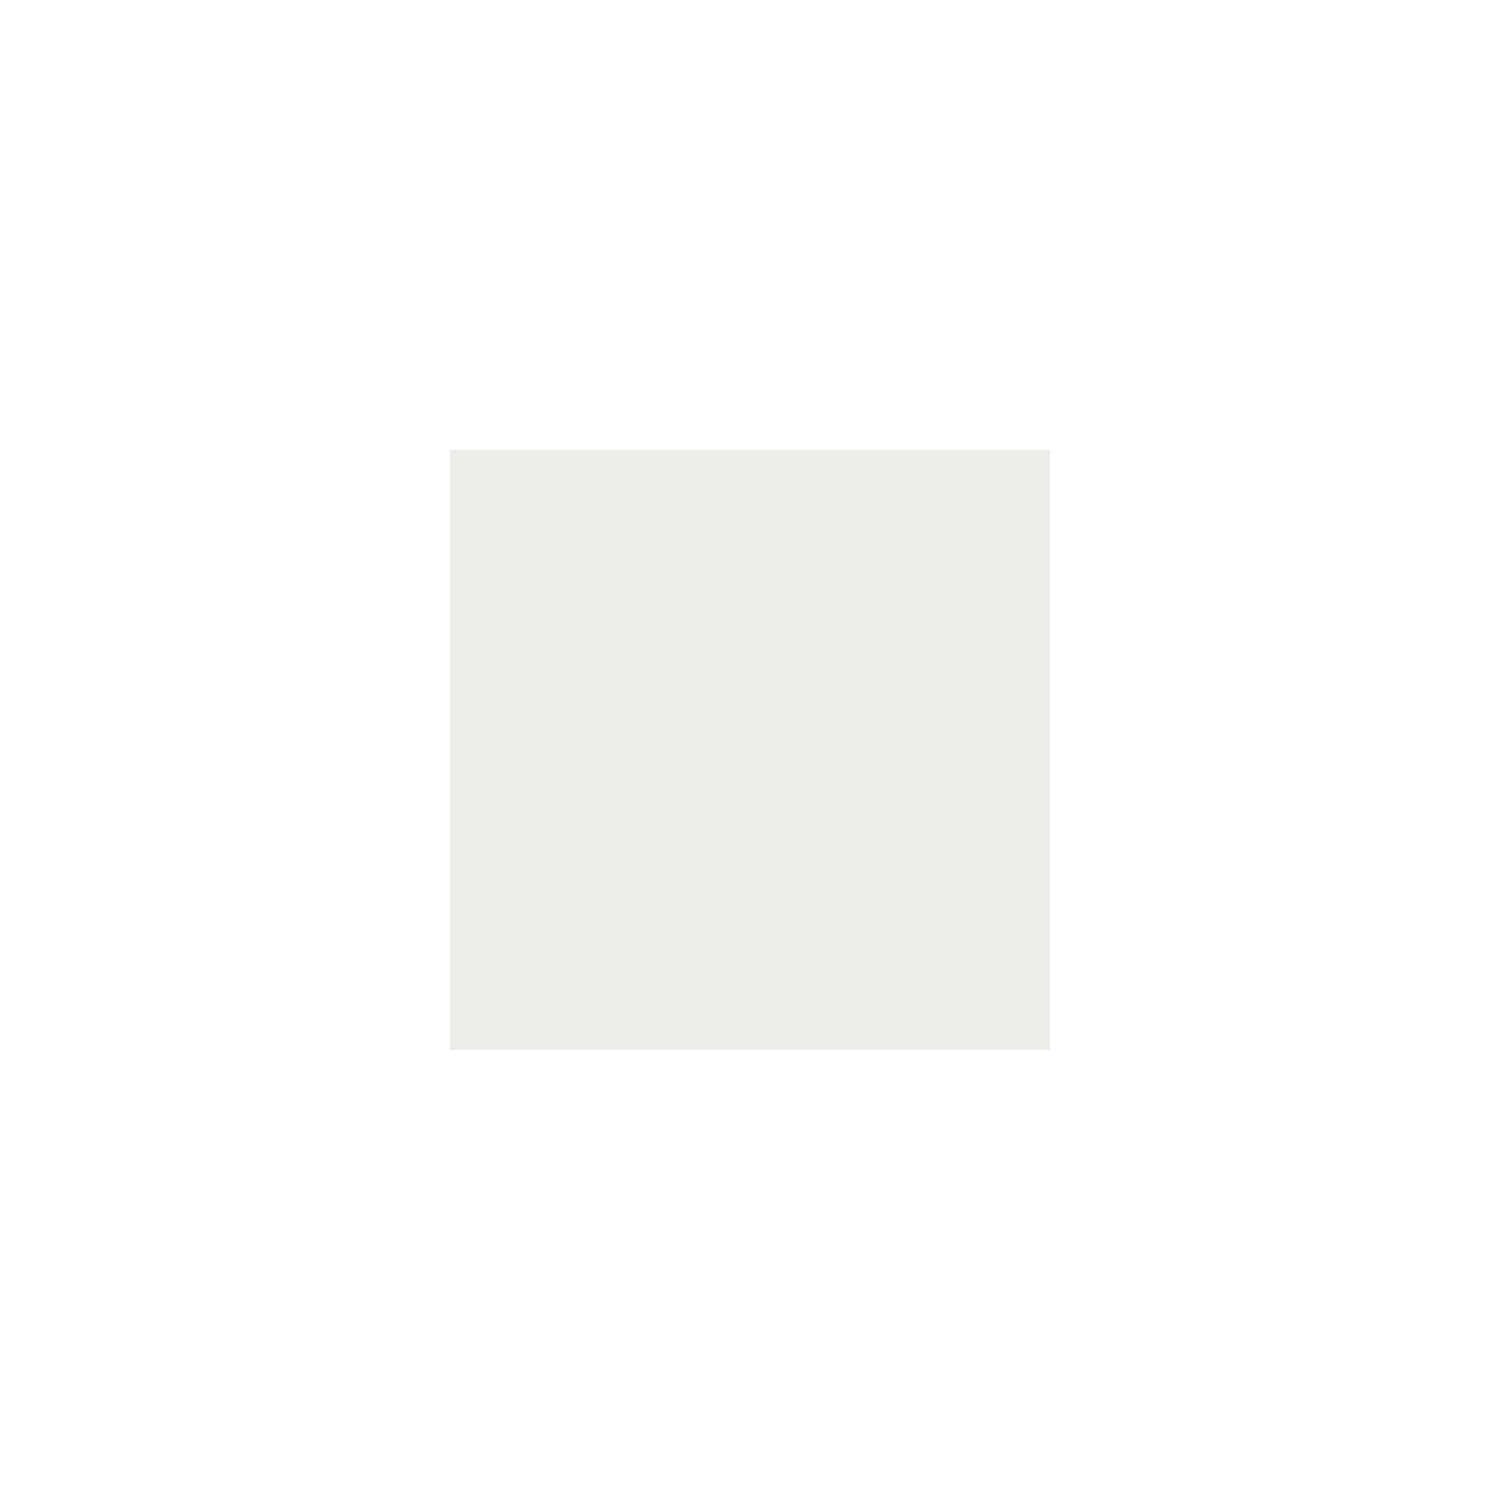 Itamoby Consolle allungabile 90x40/196 cm Diago Small Noce telaio Bianco